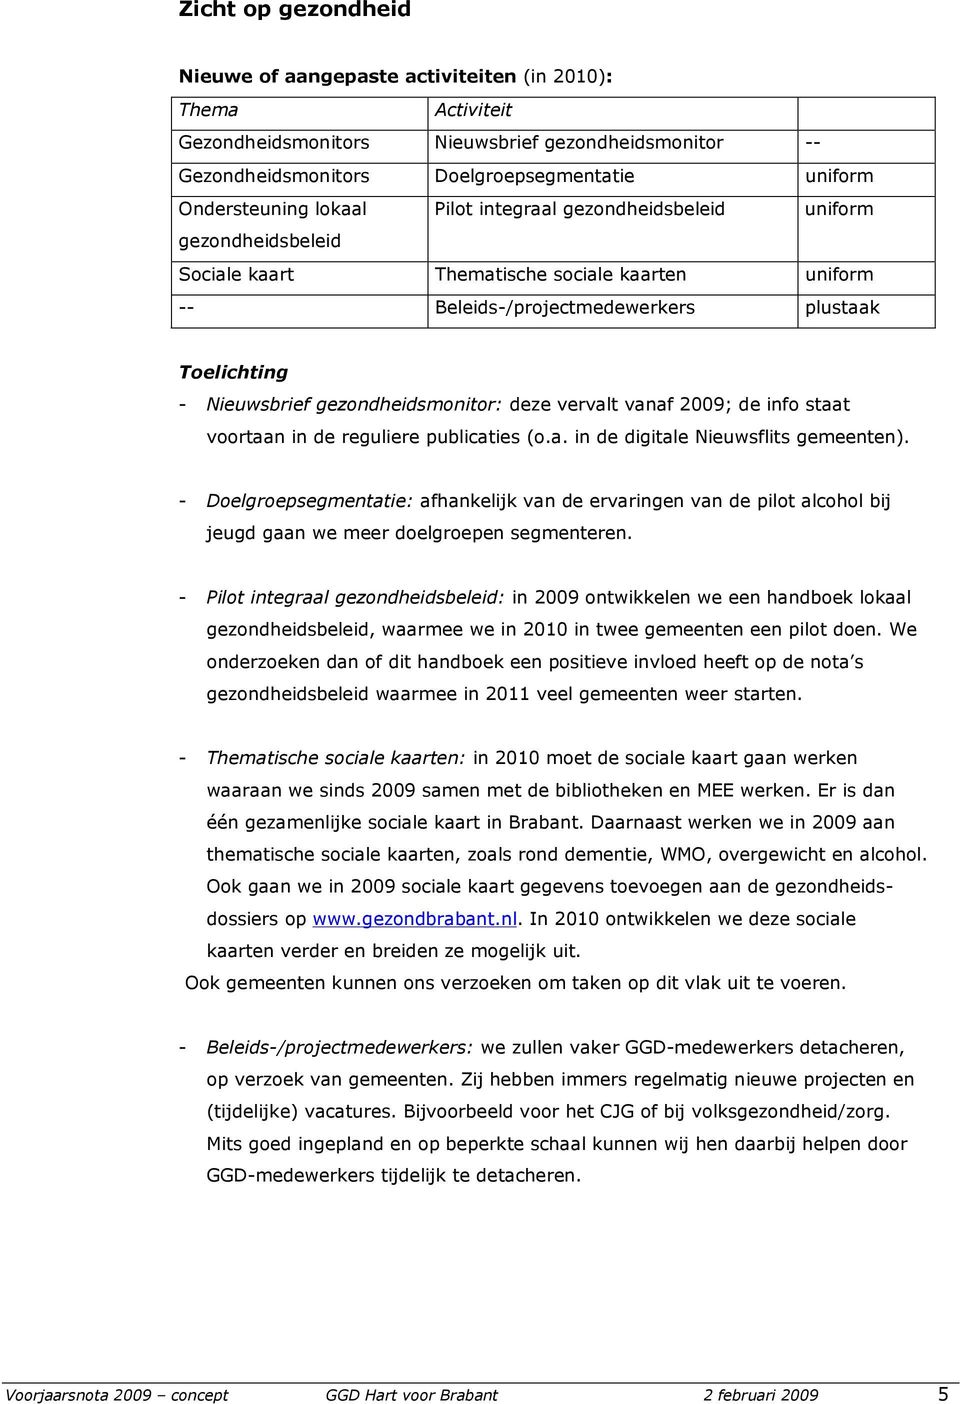 gezondheidsmonitor: deze vervalt vanaf 2009; de info staat voortaan in de reguliere publicaties (o.a. in de digitale Nieuwsflits gemeenten).